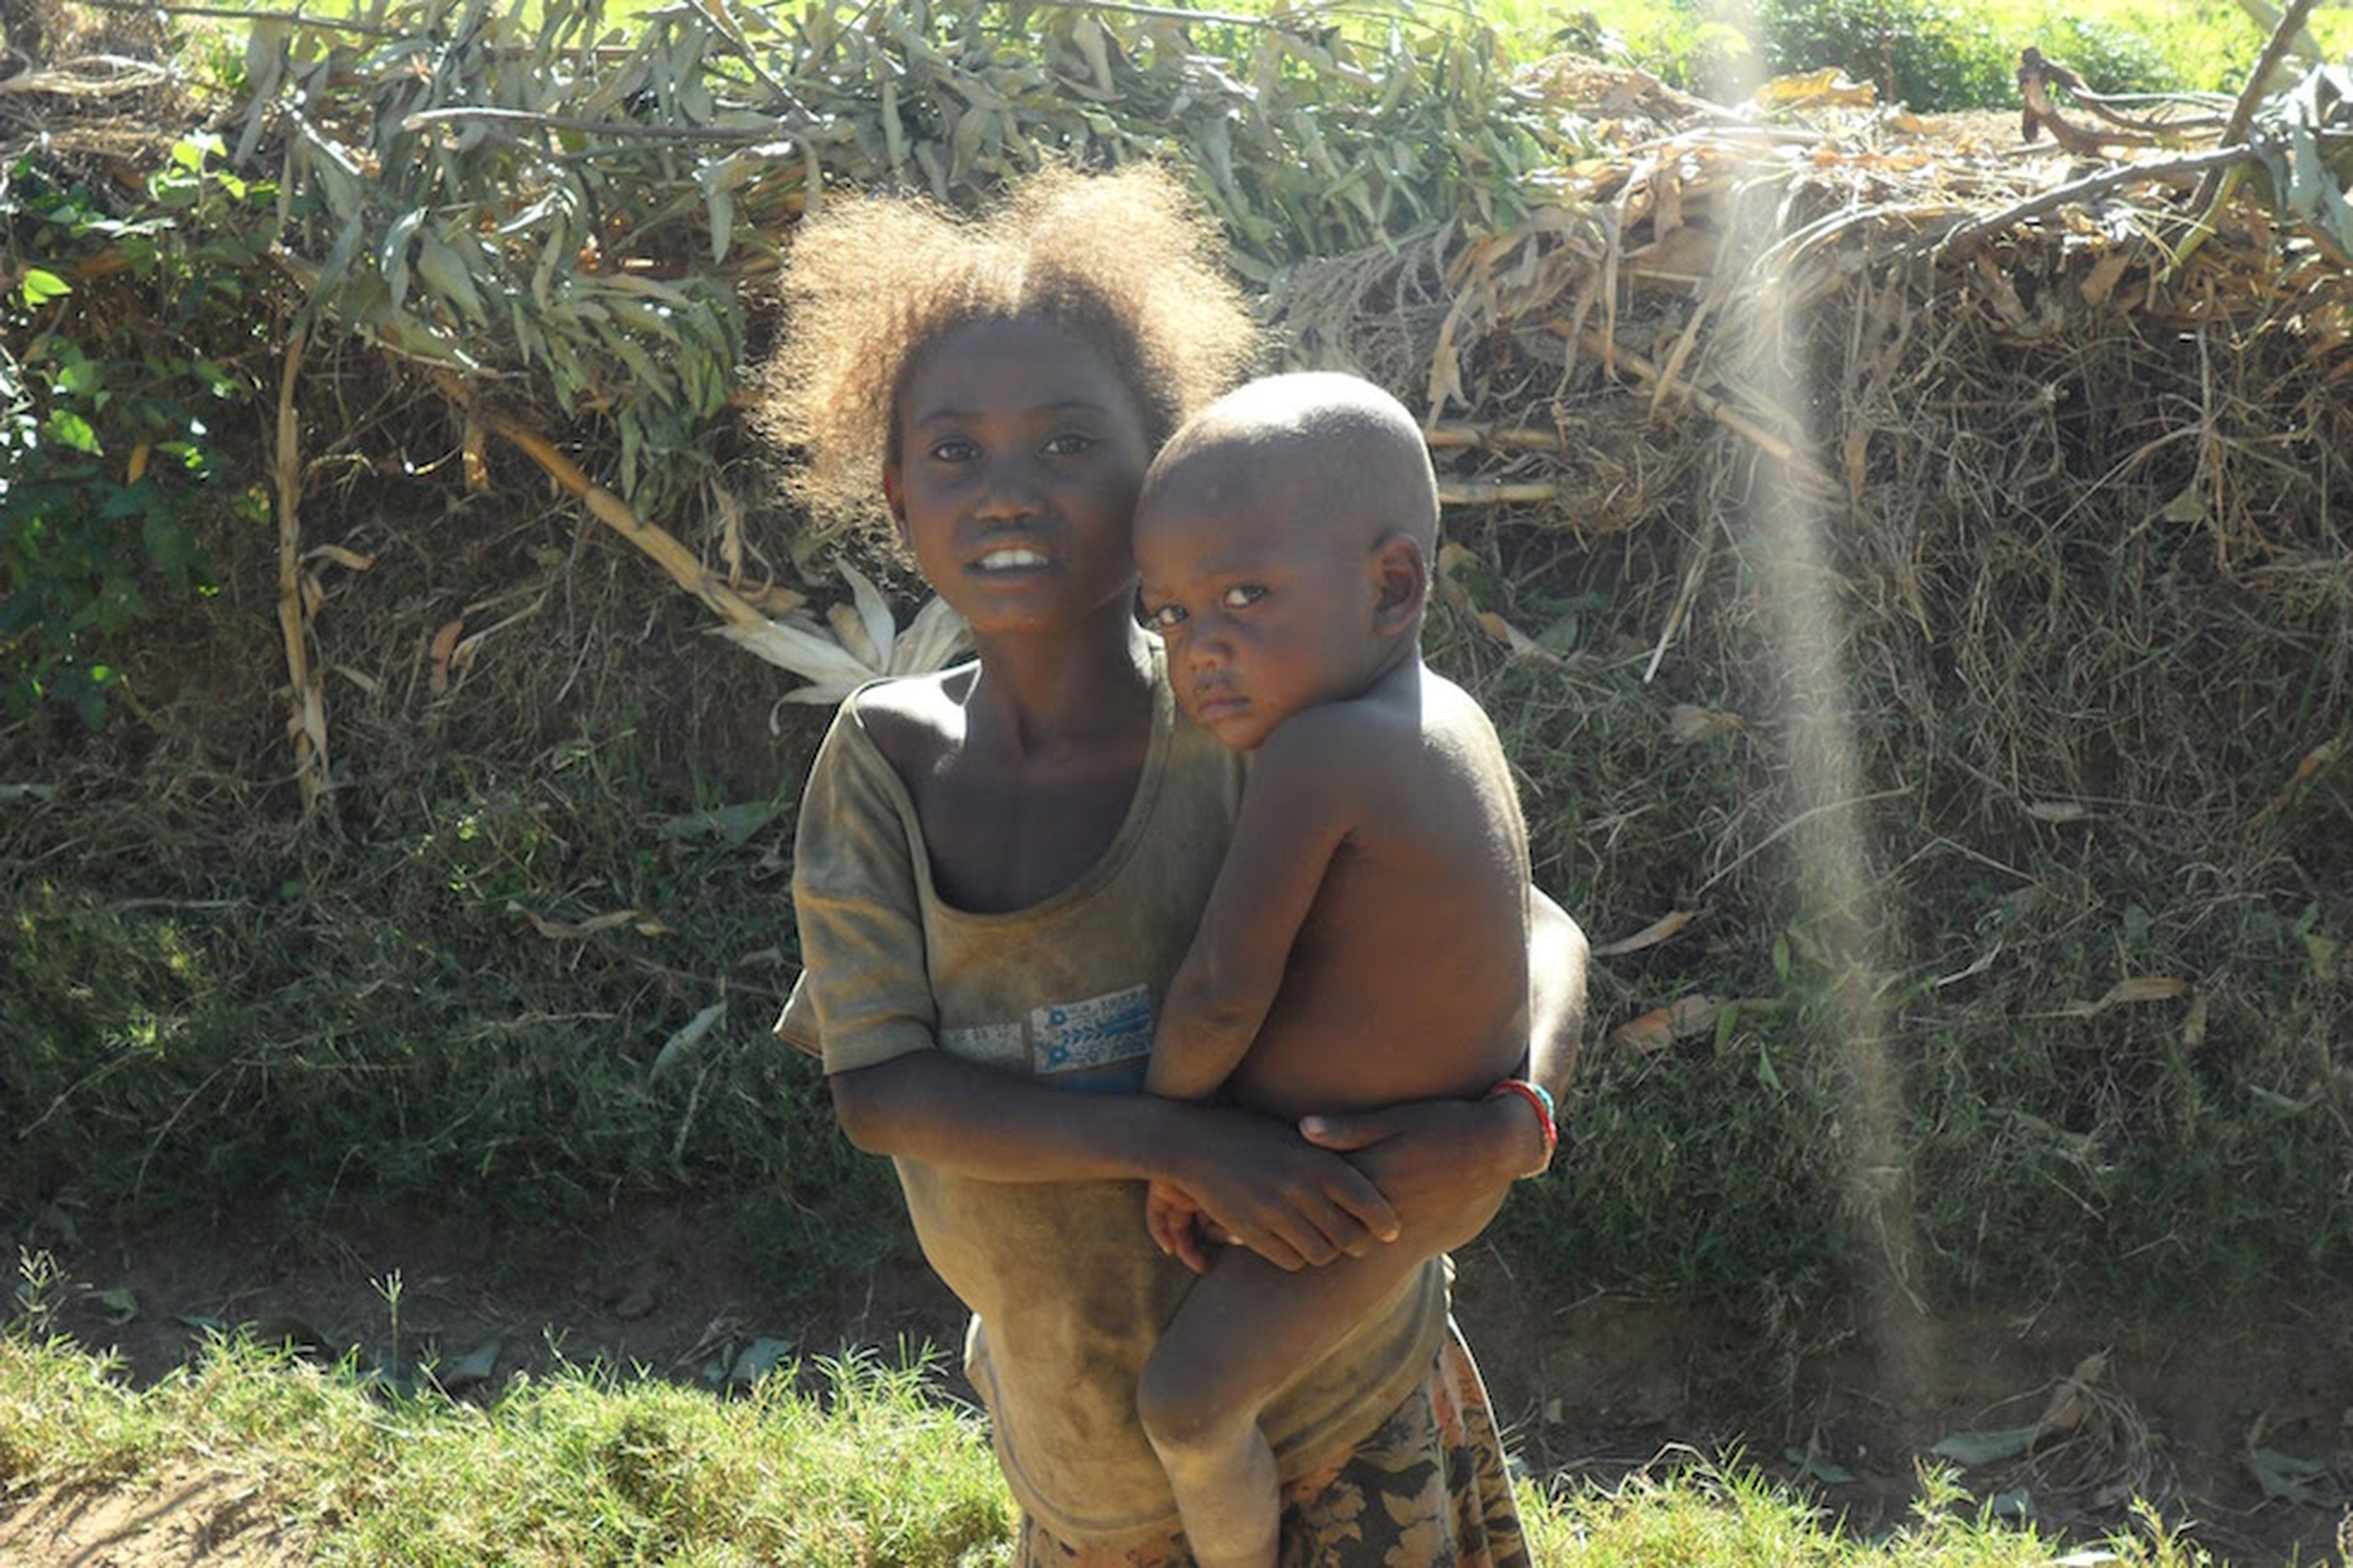 Una imagen icónica en Madagascar, una niña llevando en brazos a un bebé